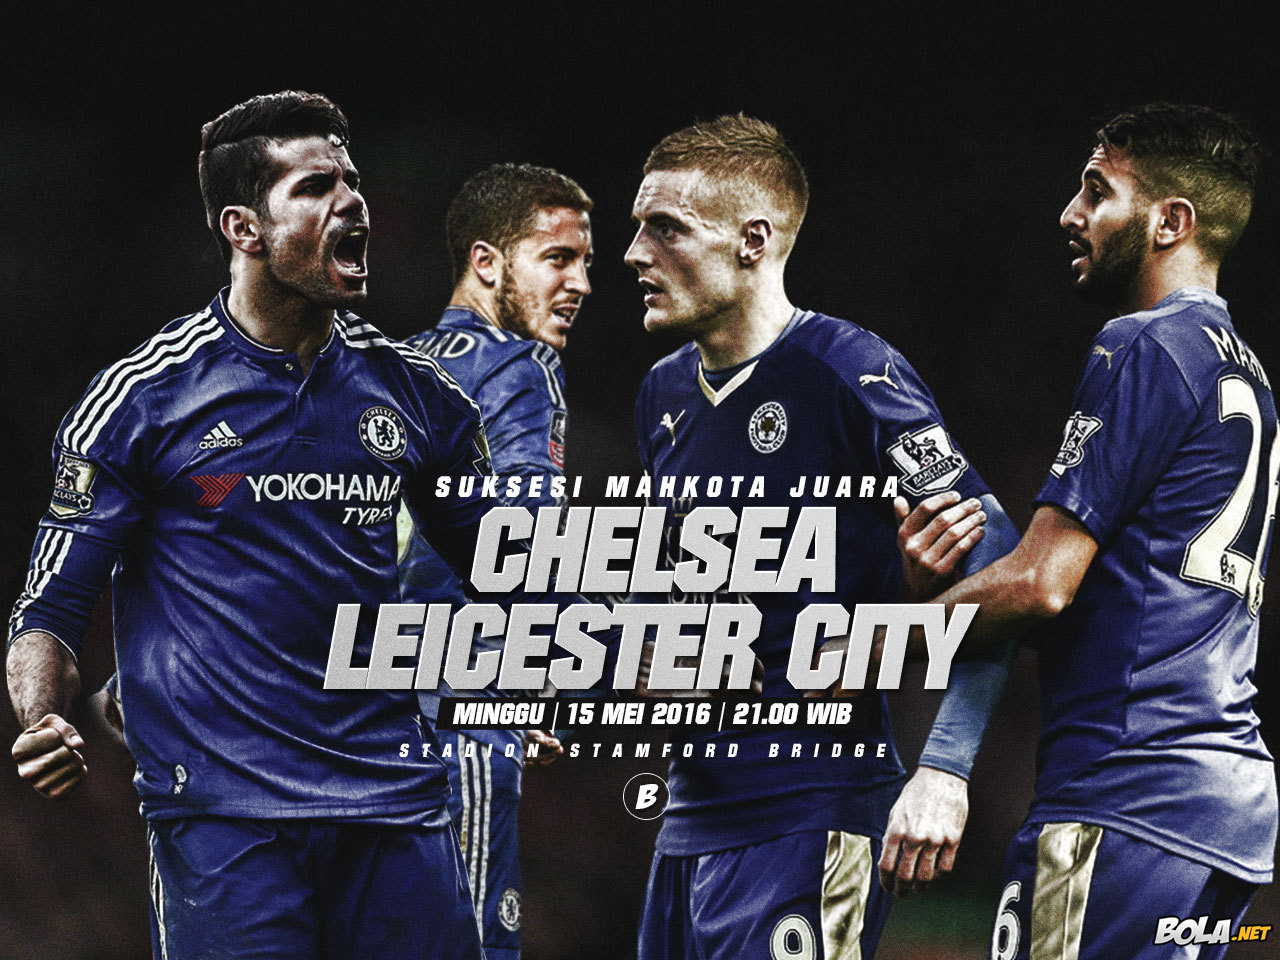 Deskripsi : Wallpaper Chelsea Vs Leicester City, size: 1280x960